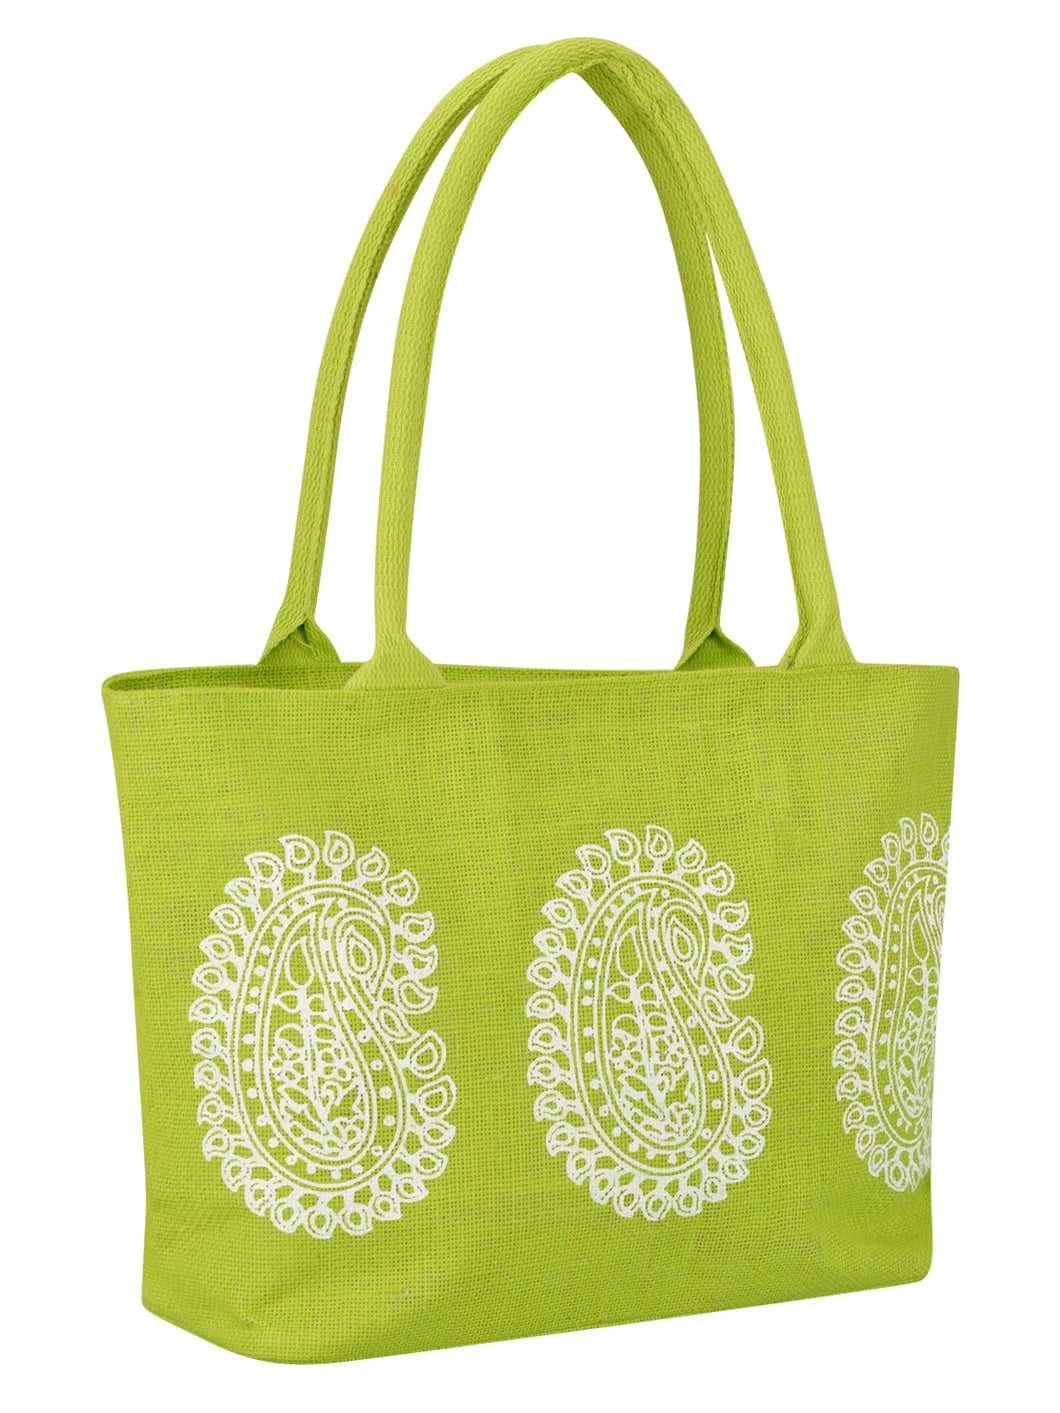 Printed Jute Bags | Branded Jute Bags | Total Merchandise